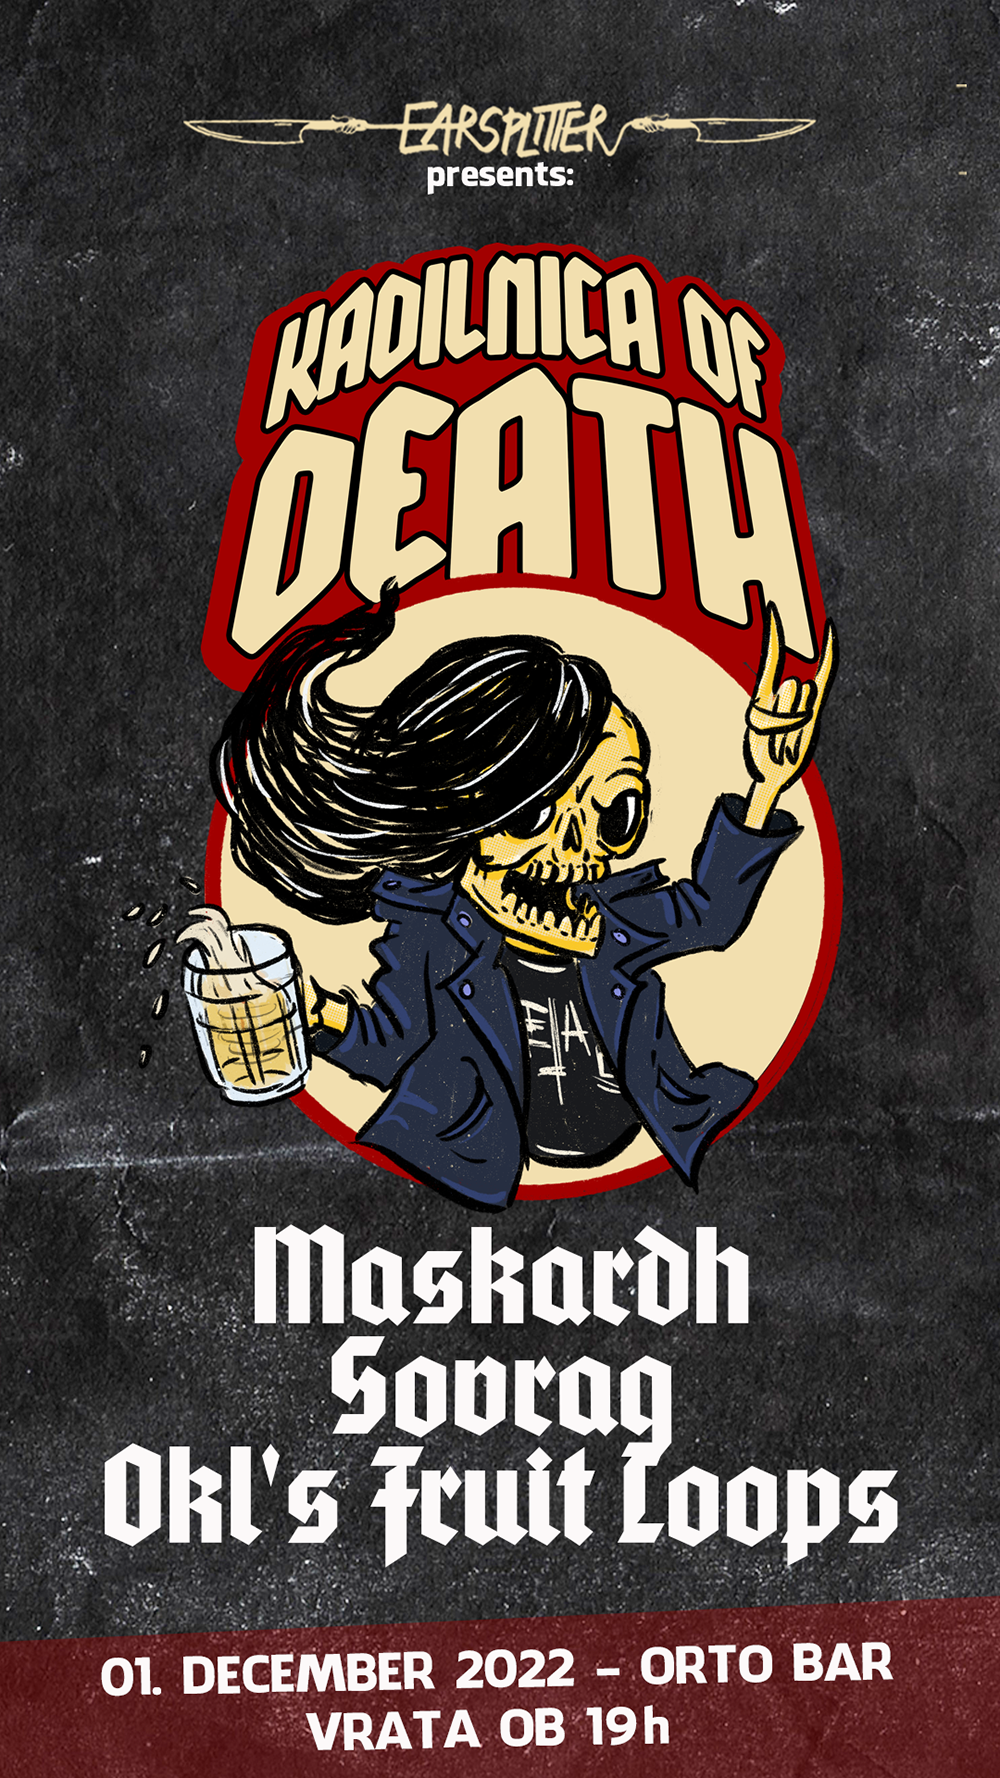 01.12.2022 - Kadilnica of Death: Maskardh (Slo), Sovrag (Slo), Okls FruitLoops (Slo) @ Orto Bar, Ljubljana